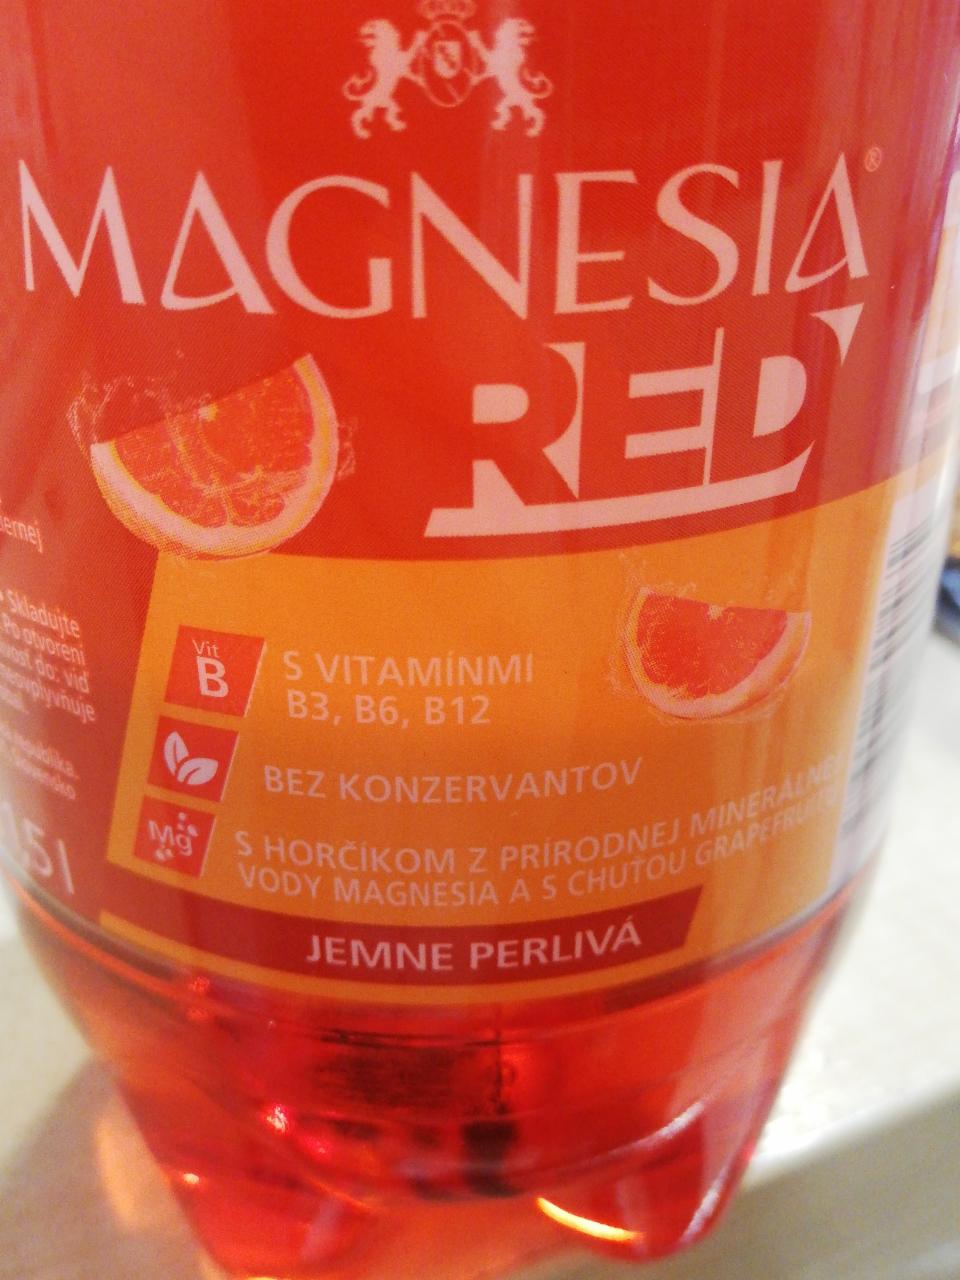 Fotografie - Magnesia red grapefruit